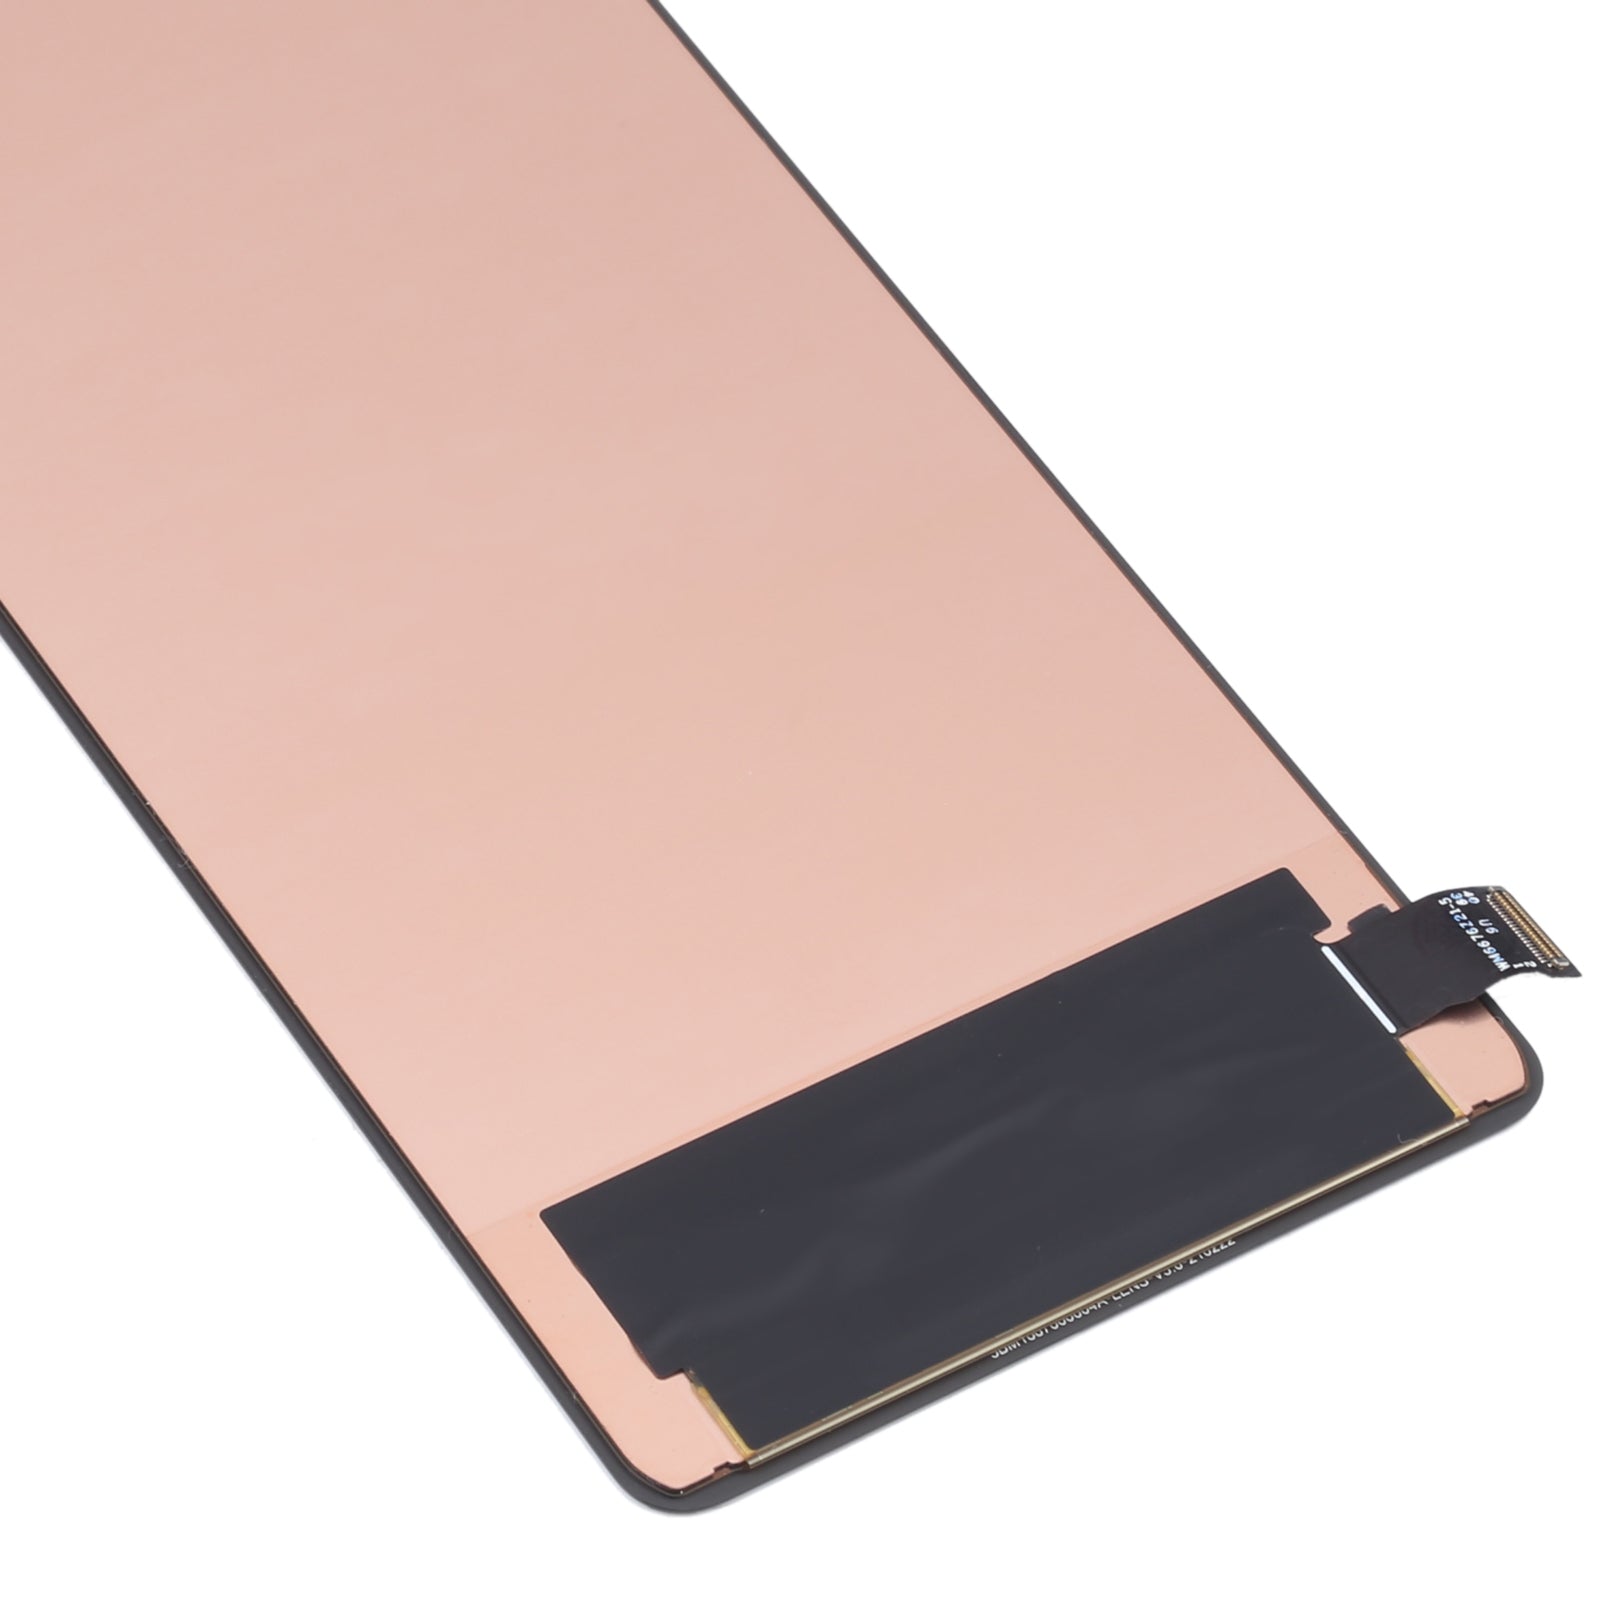 Pantalla LCD + Tactil Digitalizador Amoled Xiaomi Poco F3 GT MZB09C6IN M2104K10I